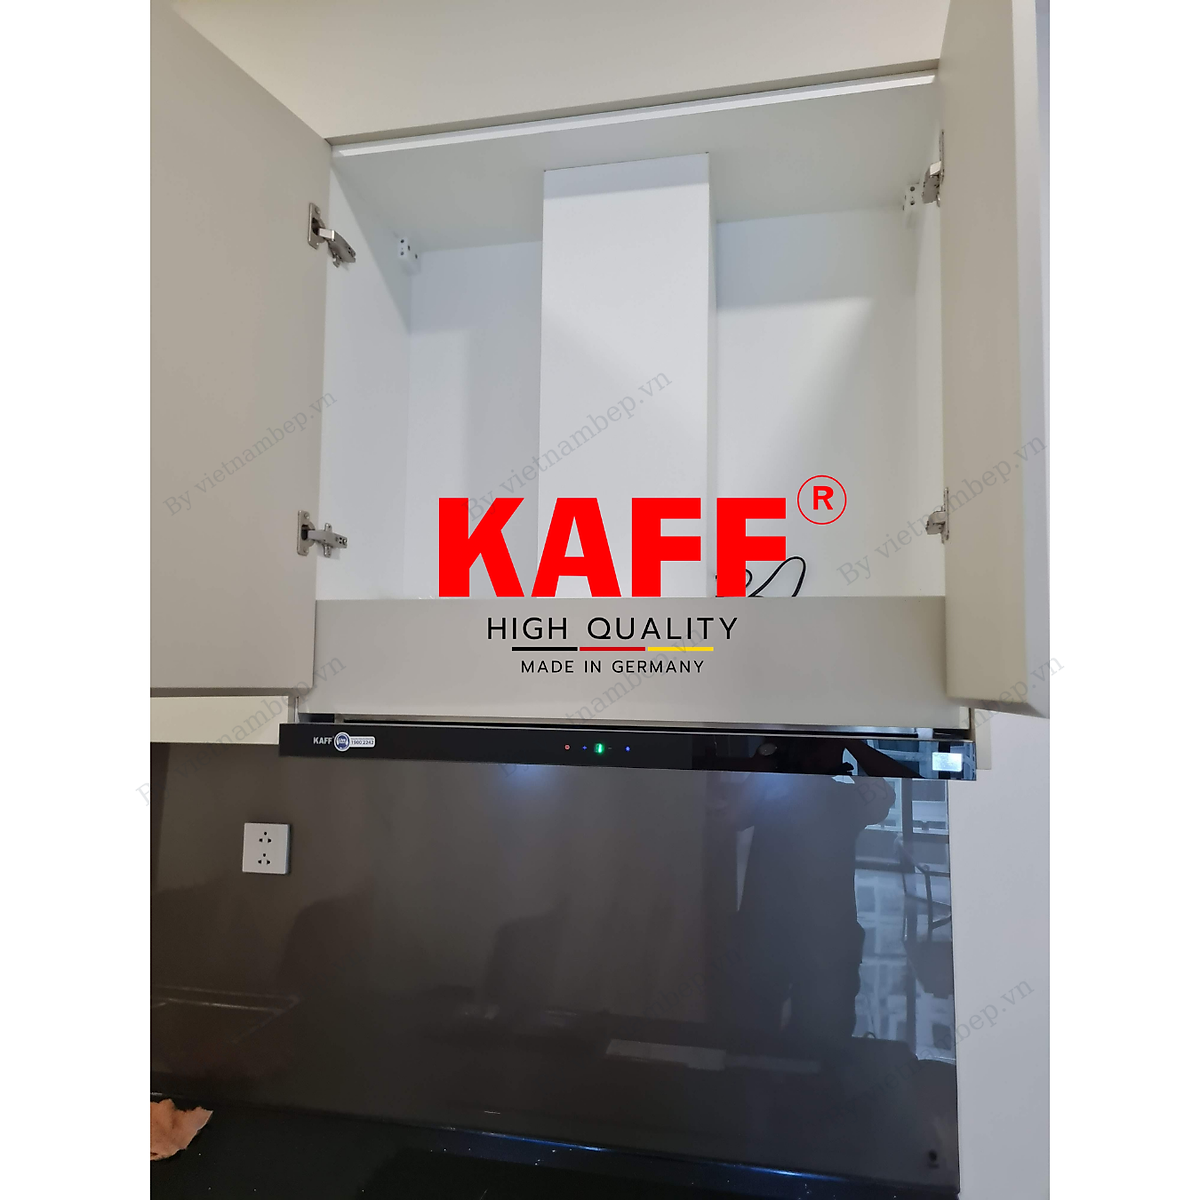 Máy hút mùi âm tủ  inox phối kính cảm ứng 700mm KAFF KF-TL700 Tặng bộ lọc than thay thế - Hàng Chính Hãng